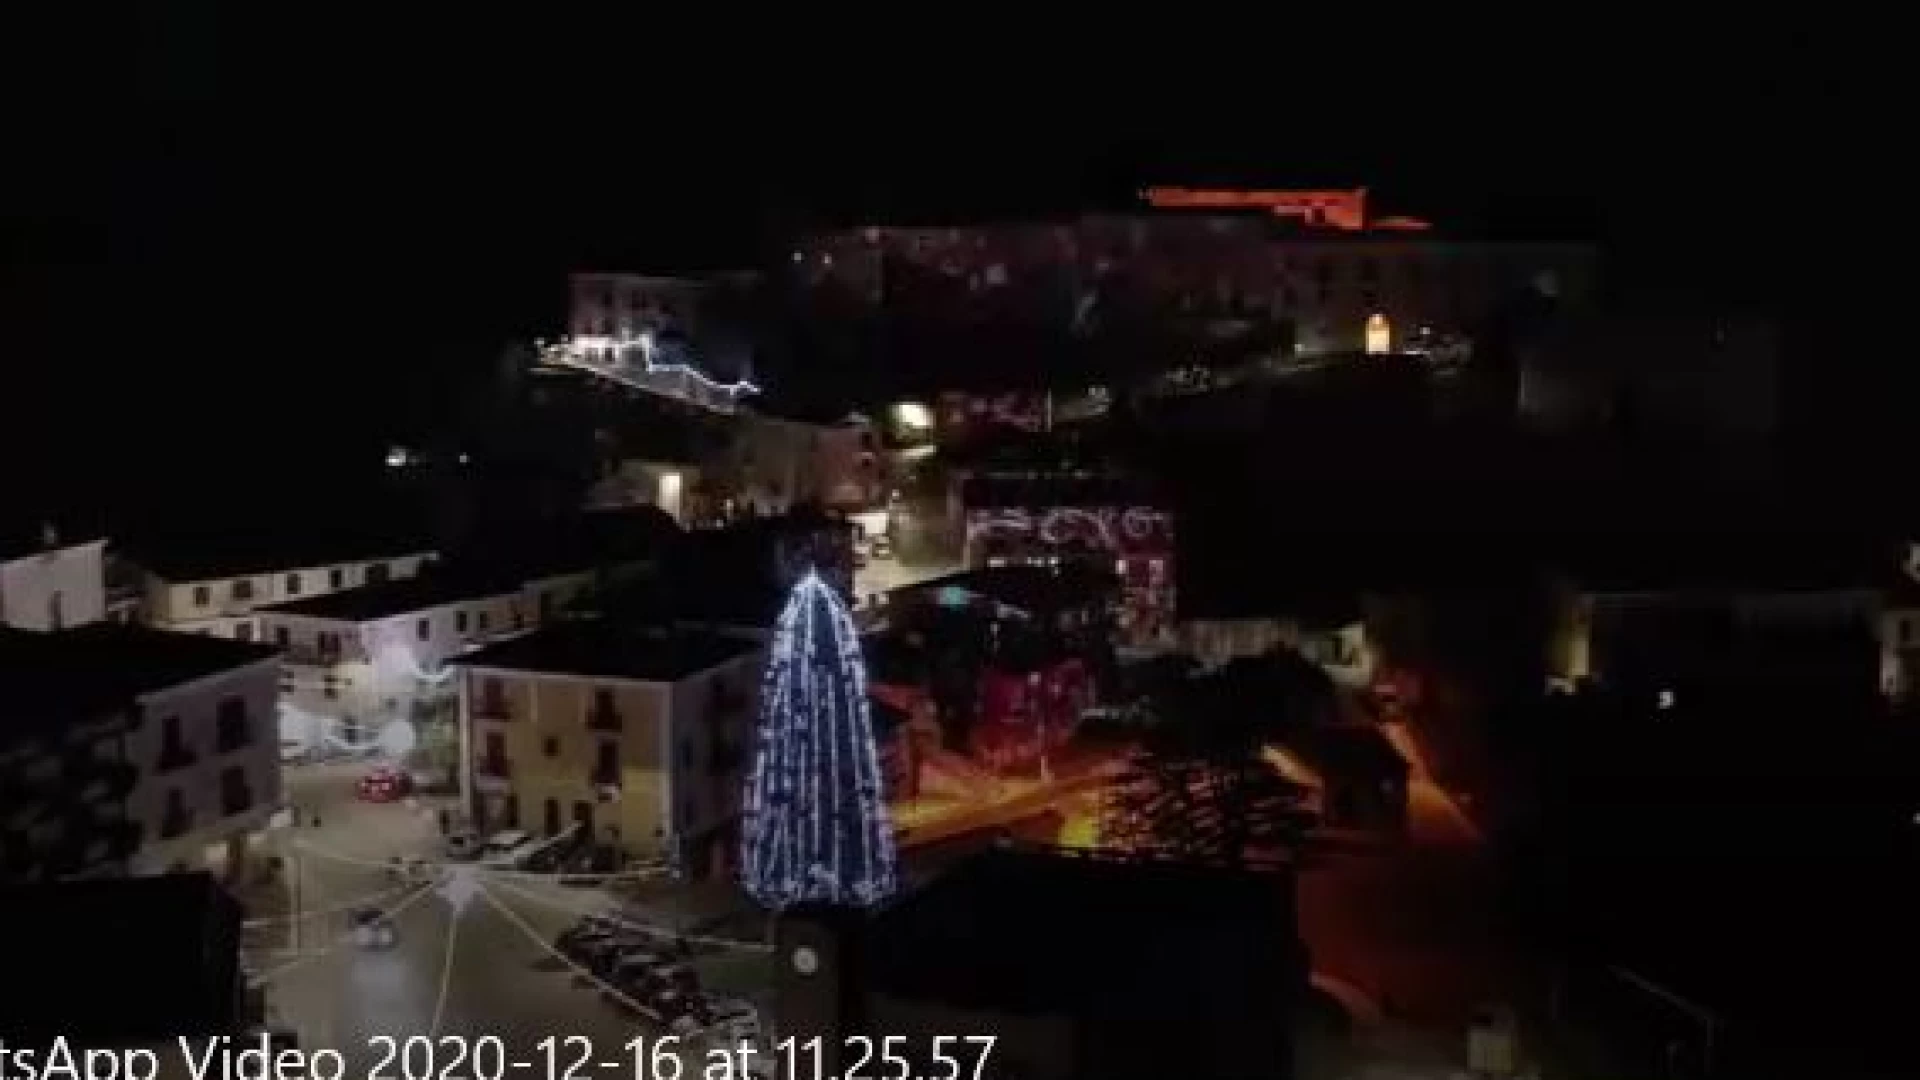 La magia del Natale avvolge Colli a Volturno tra luminarie e proiezioni fantastiche. Guarda i video.